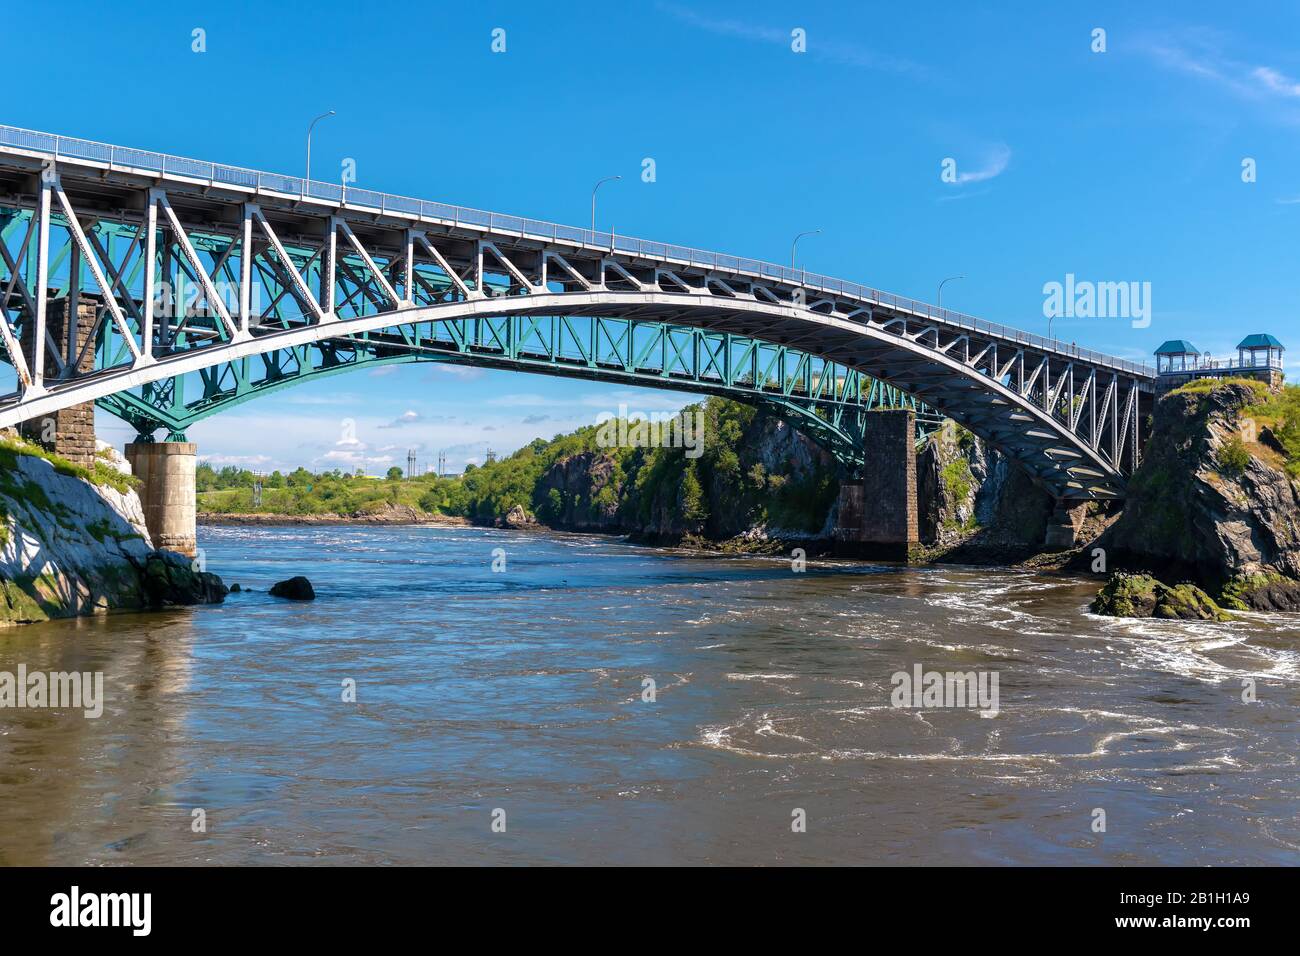 Le pont Reversing Falls à Saint John, au Nouveau-Brunswick, au Canada, au-dessus de la rivière Saint John. Rivière qui coule lentement. Pont de train derrière, ciel bleu au-dessus. Banque D'Images